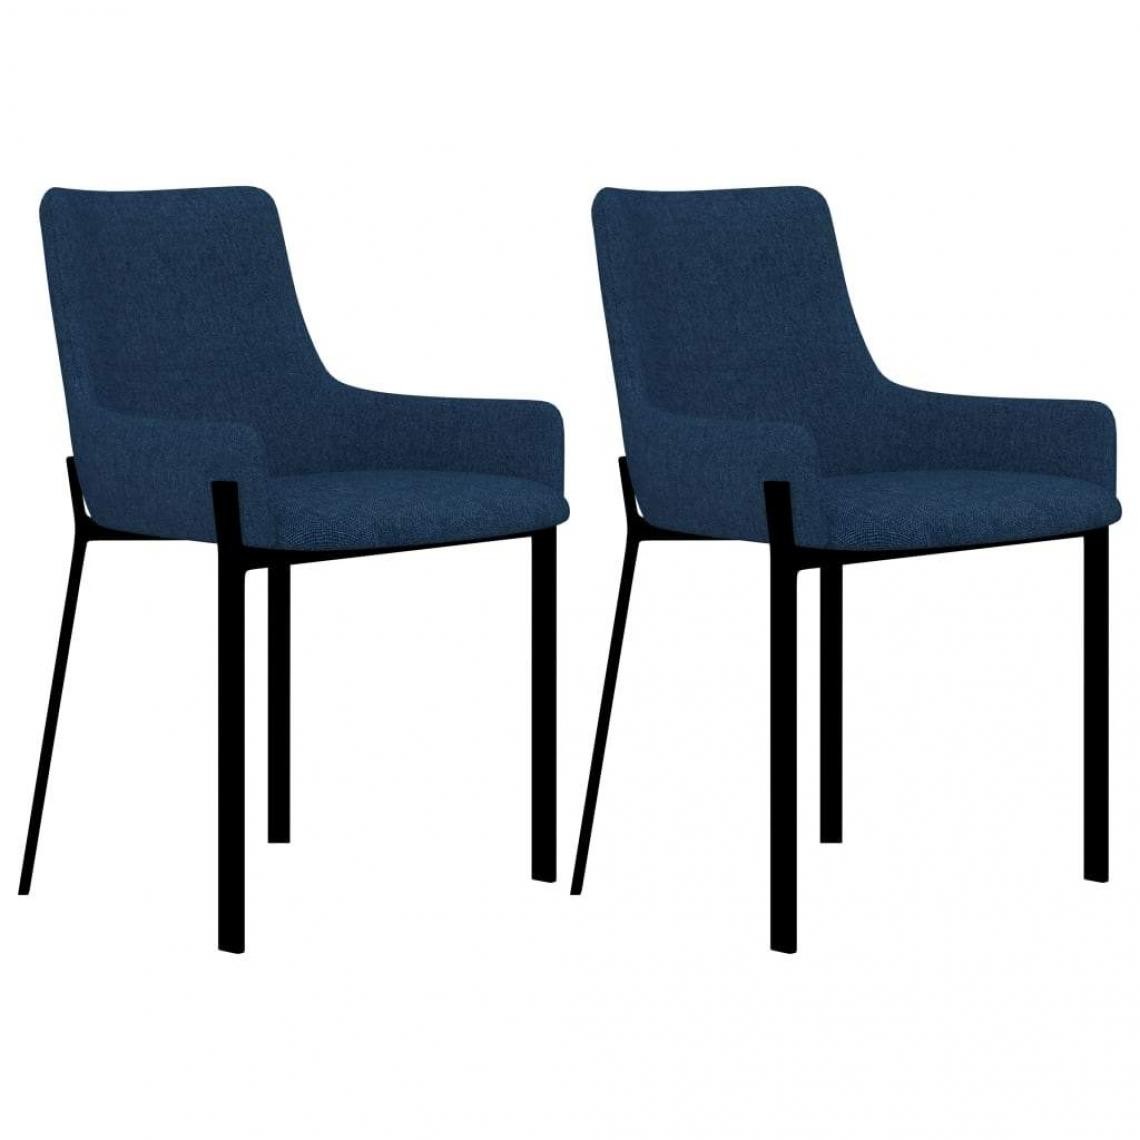 Decoshop26 - Lot de 2 chaises de salle à manger cuisine design moderne tissu bleu CDS020241 - Chaises